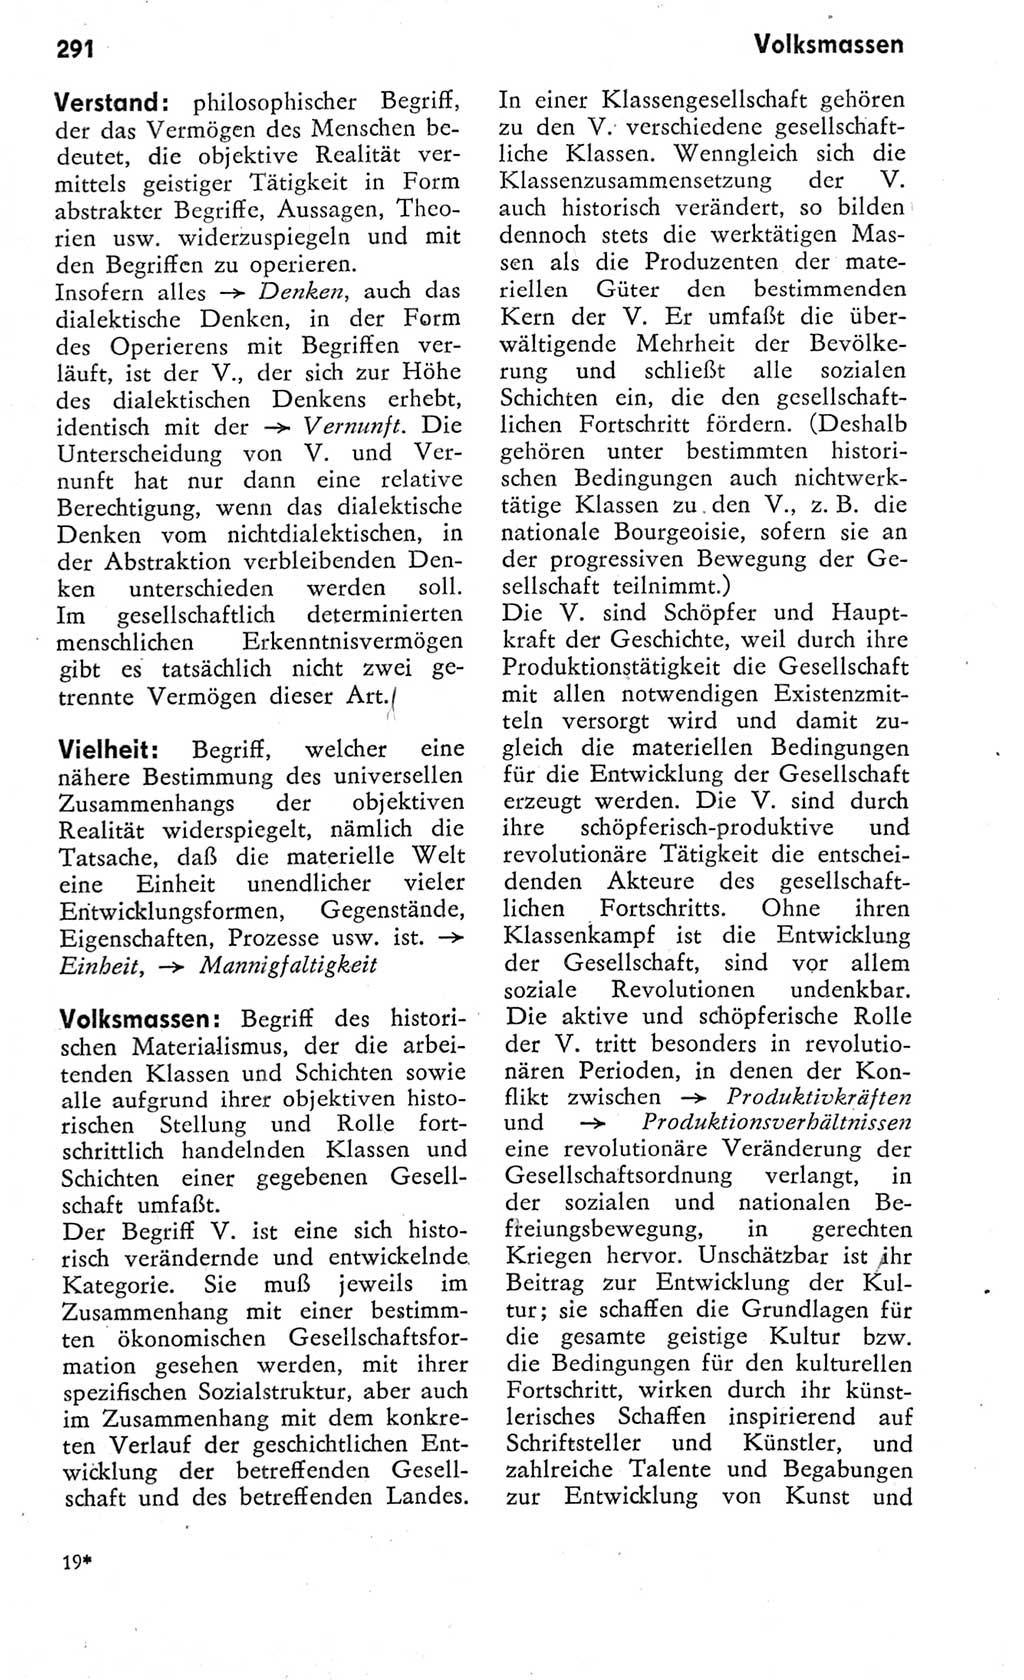 Kleines Wörterbuch der marxistisch-leninistischen Philosophie [Deutsche Demokratische Republik (DDR)] 1975, Seite 291 (Kl. Wb. ML Phil. DDR 1975, S. 291)